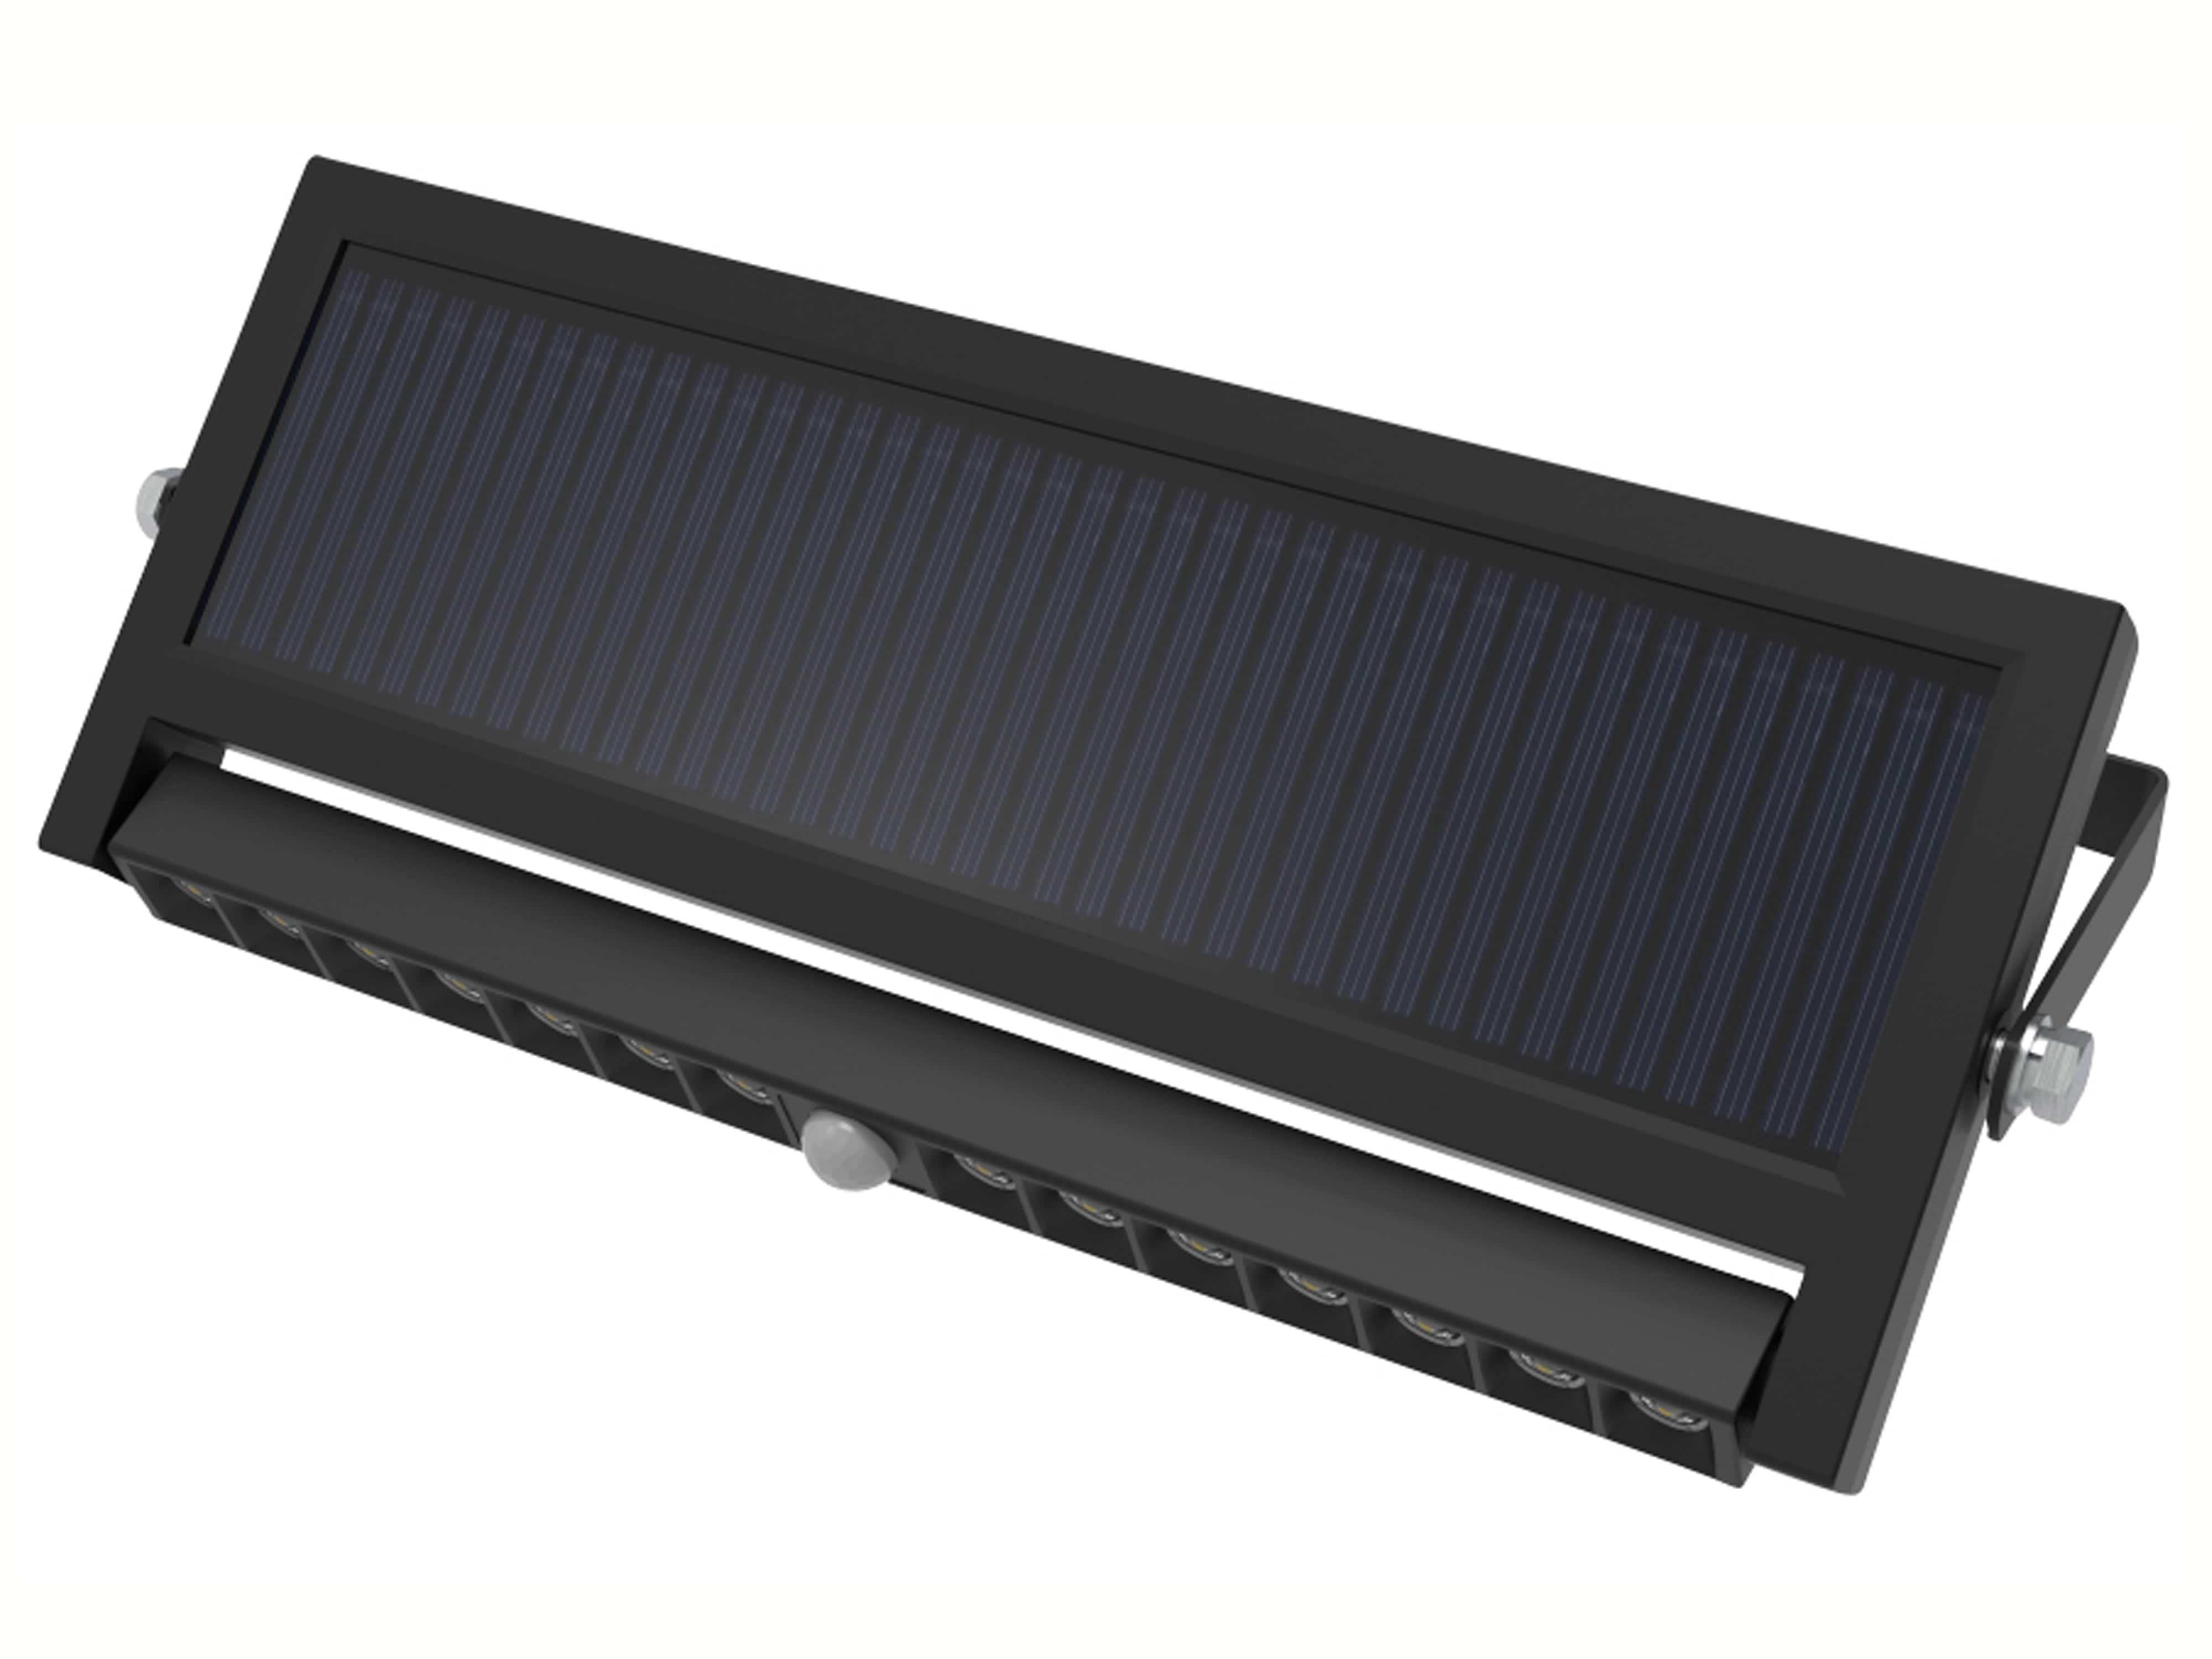 LUXULA Solar LED-Wandleuchte, 10 W, 1000 lm, PIR-Sensor, schwenkbar